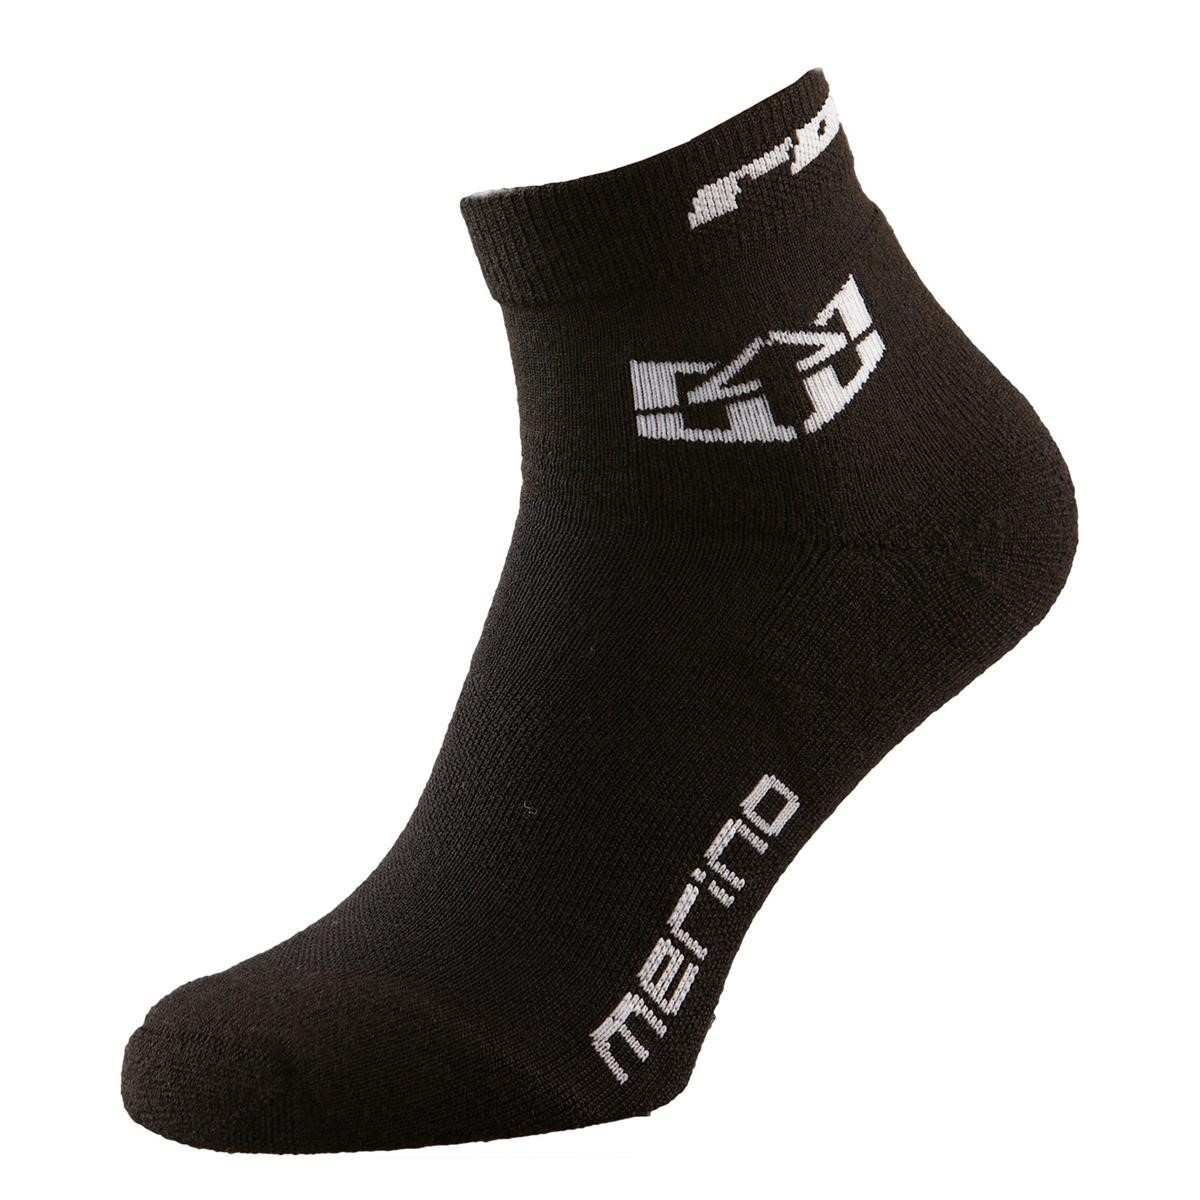 Royal Racing Socks Merino Short Black